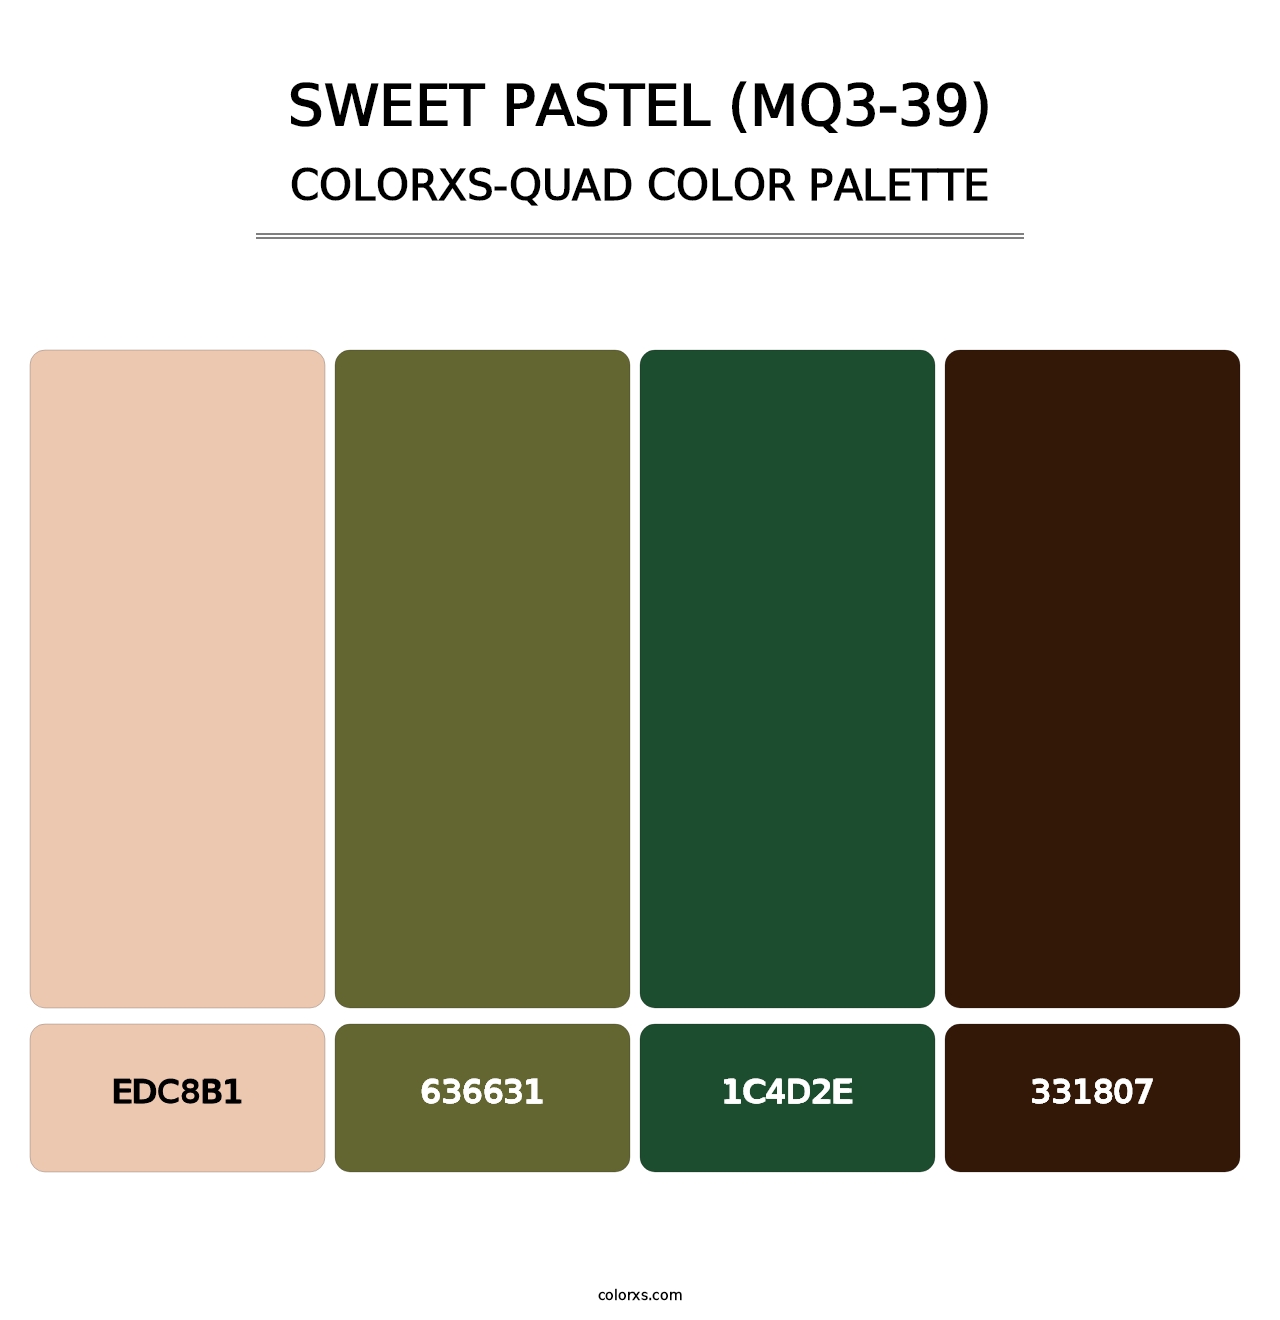 Sweet Pastel (MQ3-39) - Colorxs Quad Palette